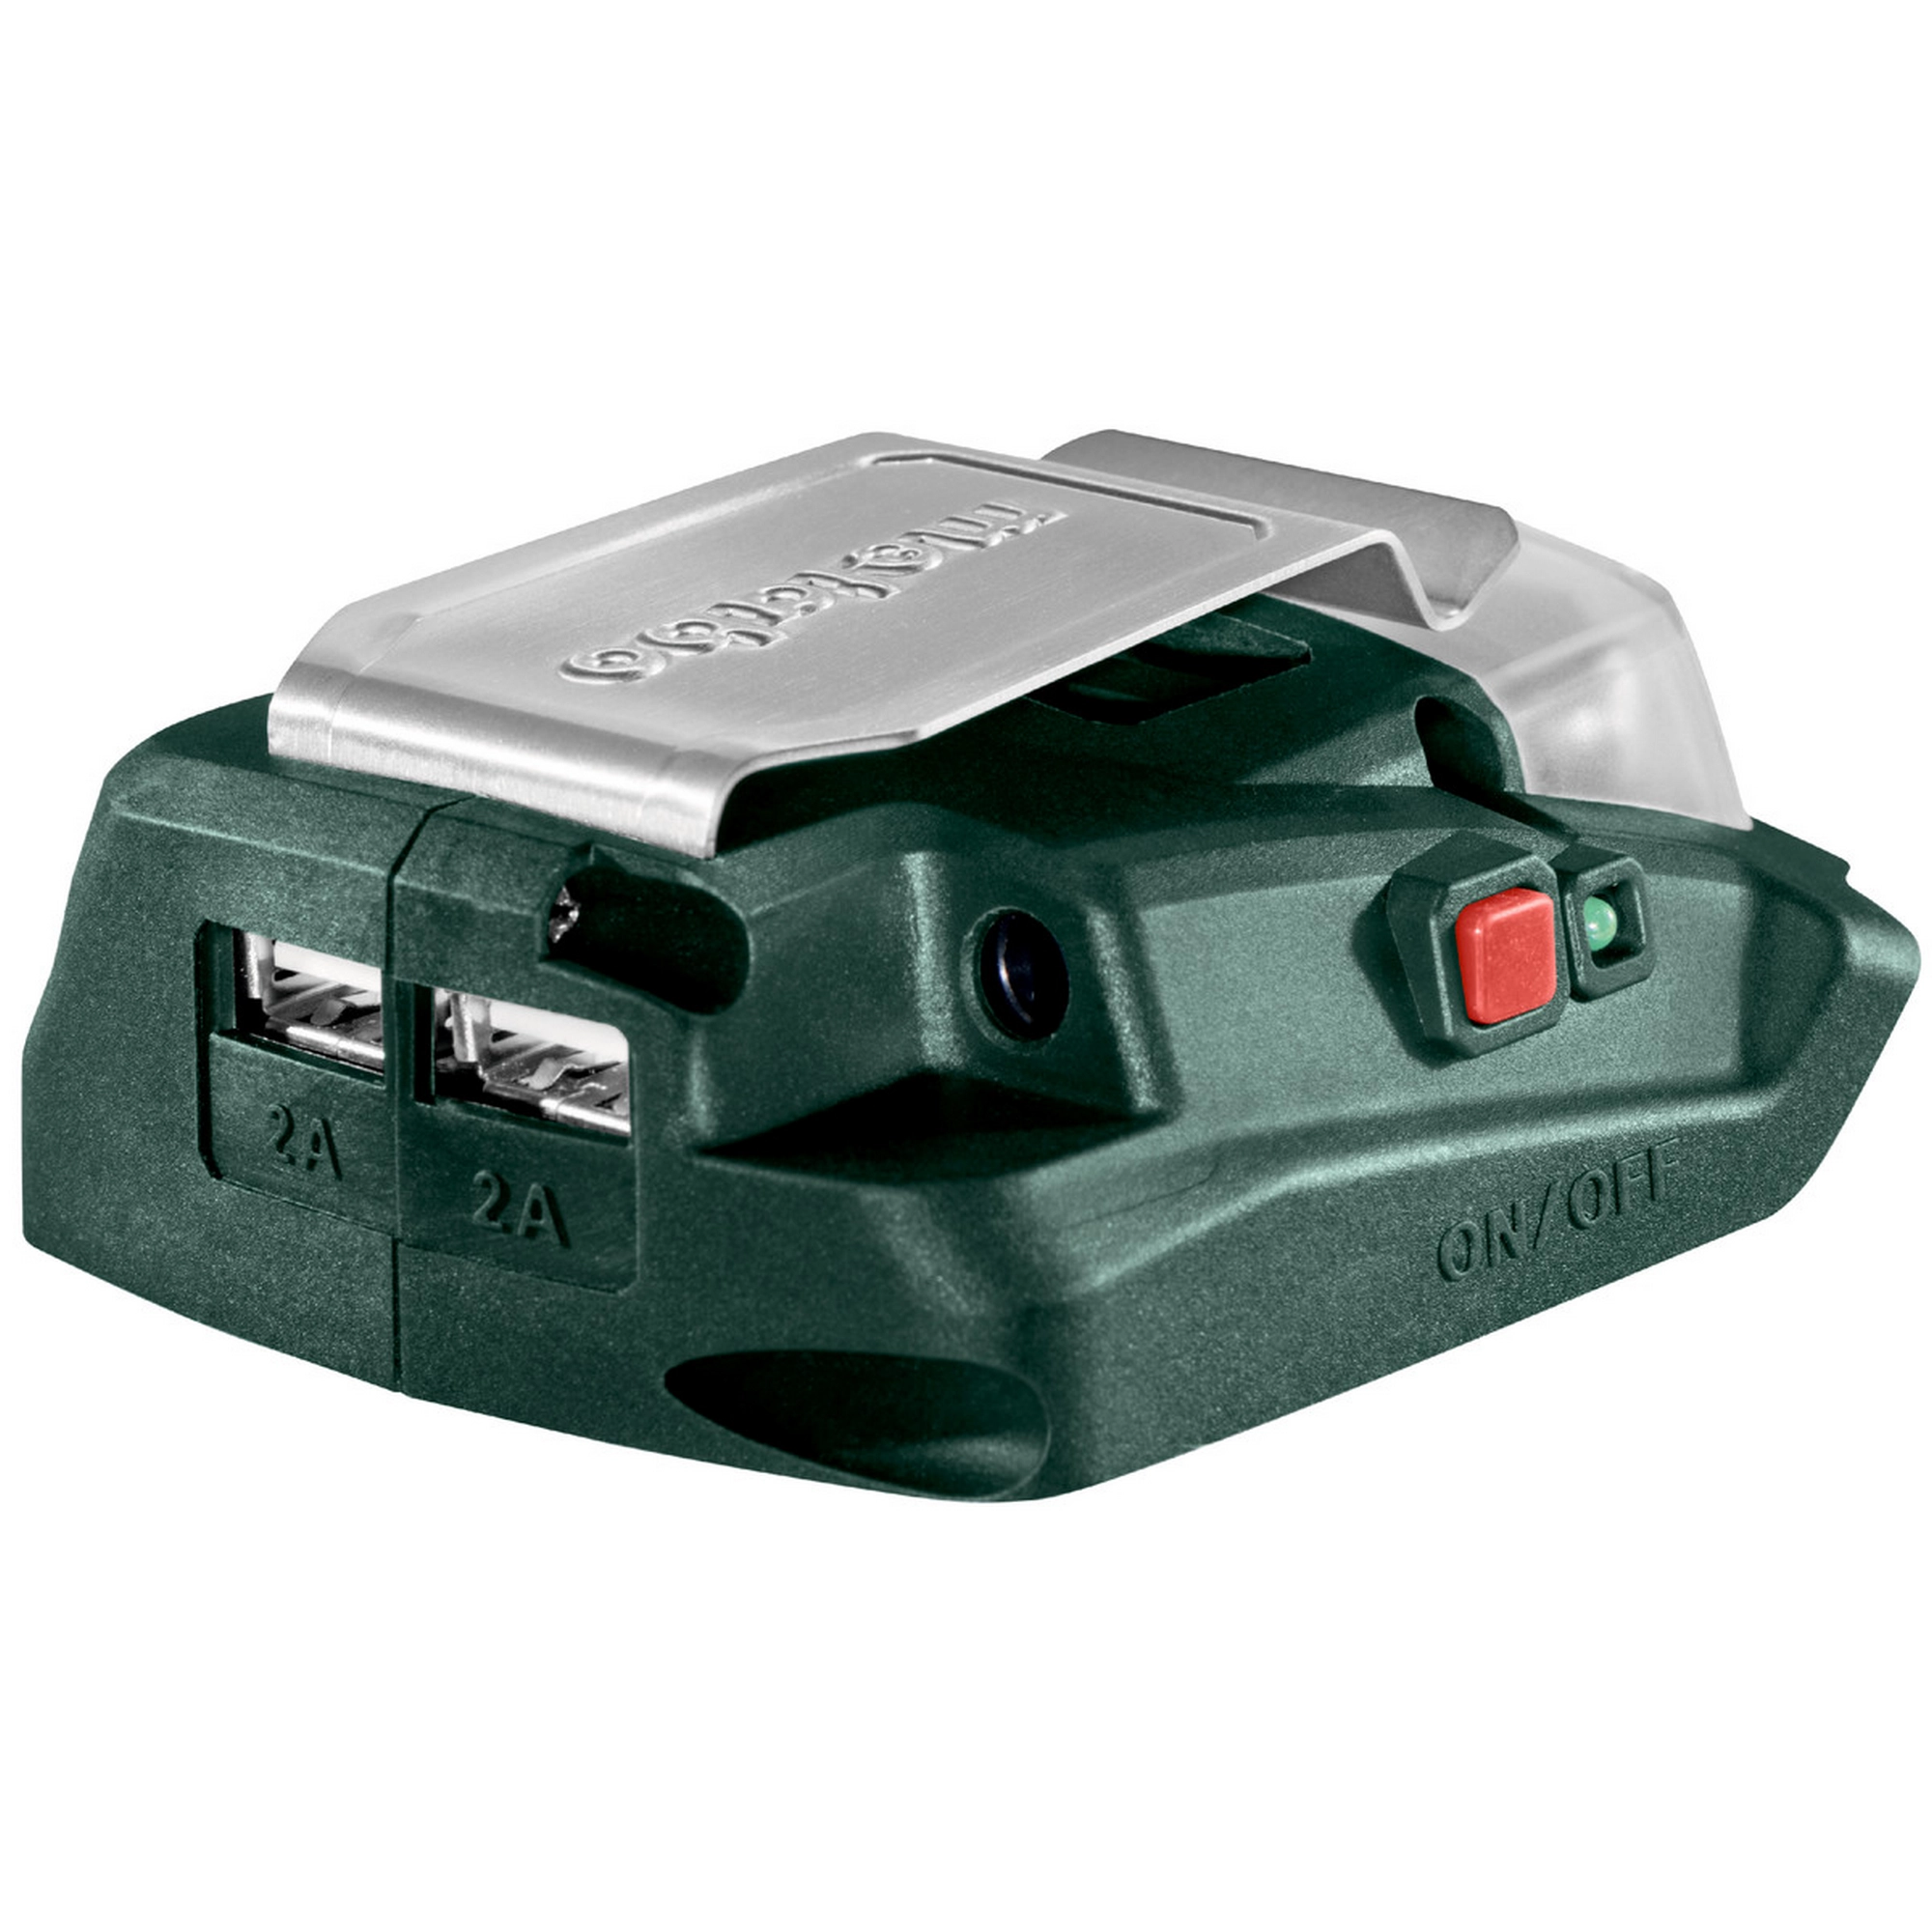 Akku-Power-Adapter PA 14,4-18 LED USB